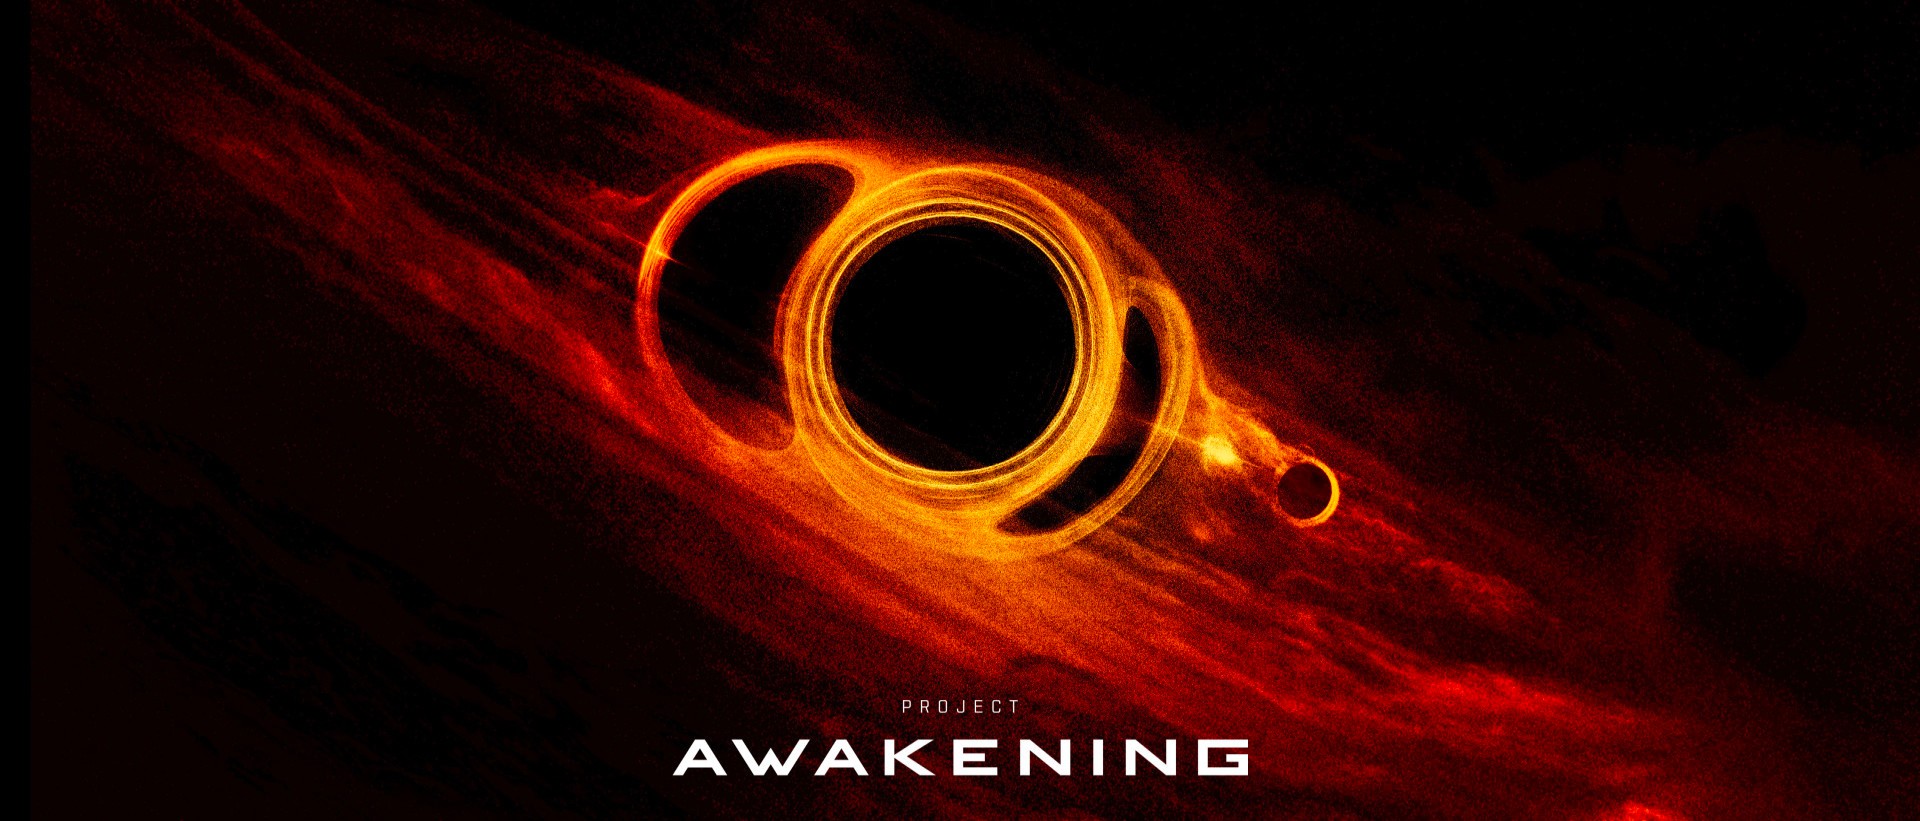 Project Awakening to nowa gra w świecie EVE Online